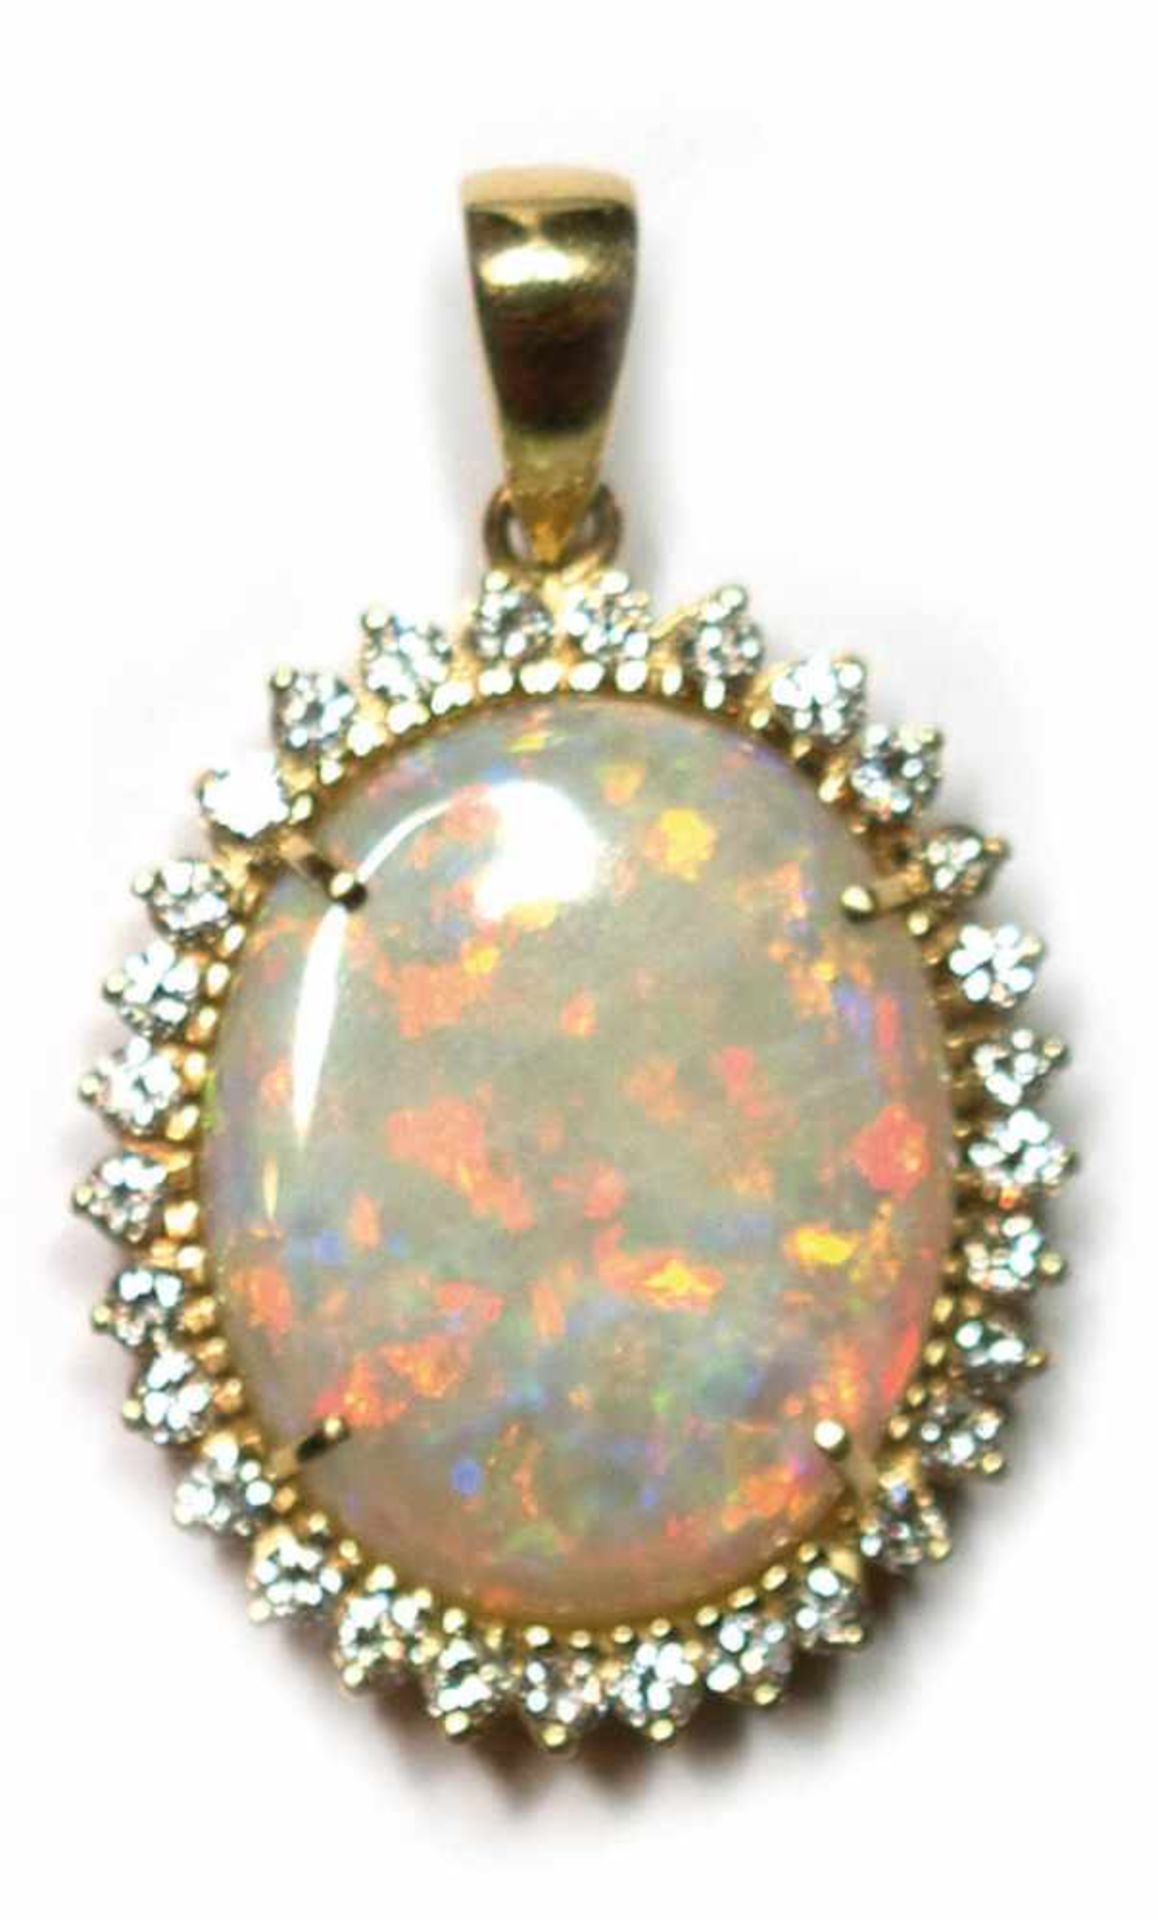 Opal-Anhänger, 585er GG, besetzt mit natürlichem Opal-Cabochon, oval, von 15 ct., umrandetvon 30